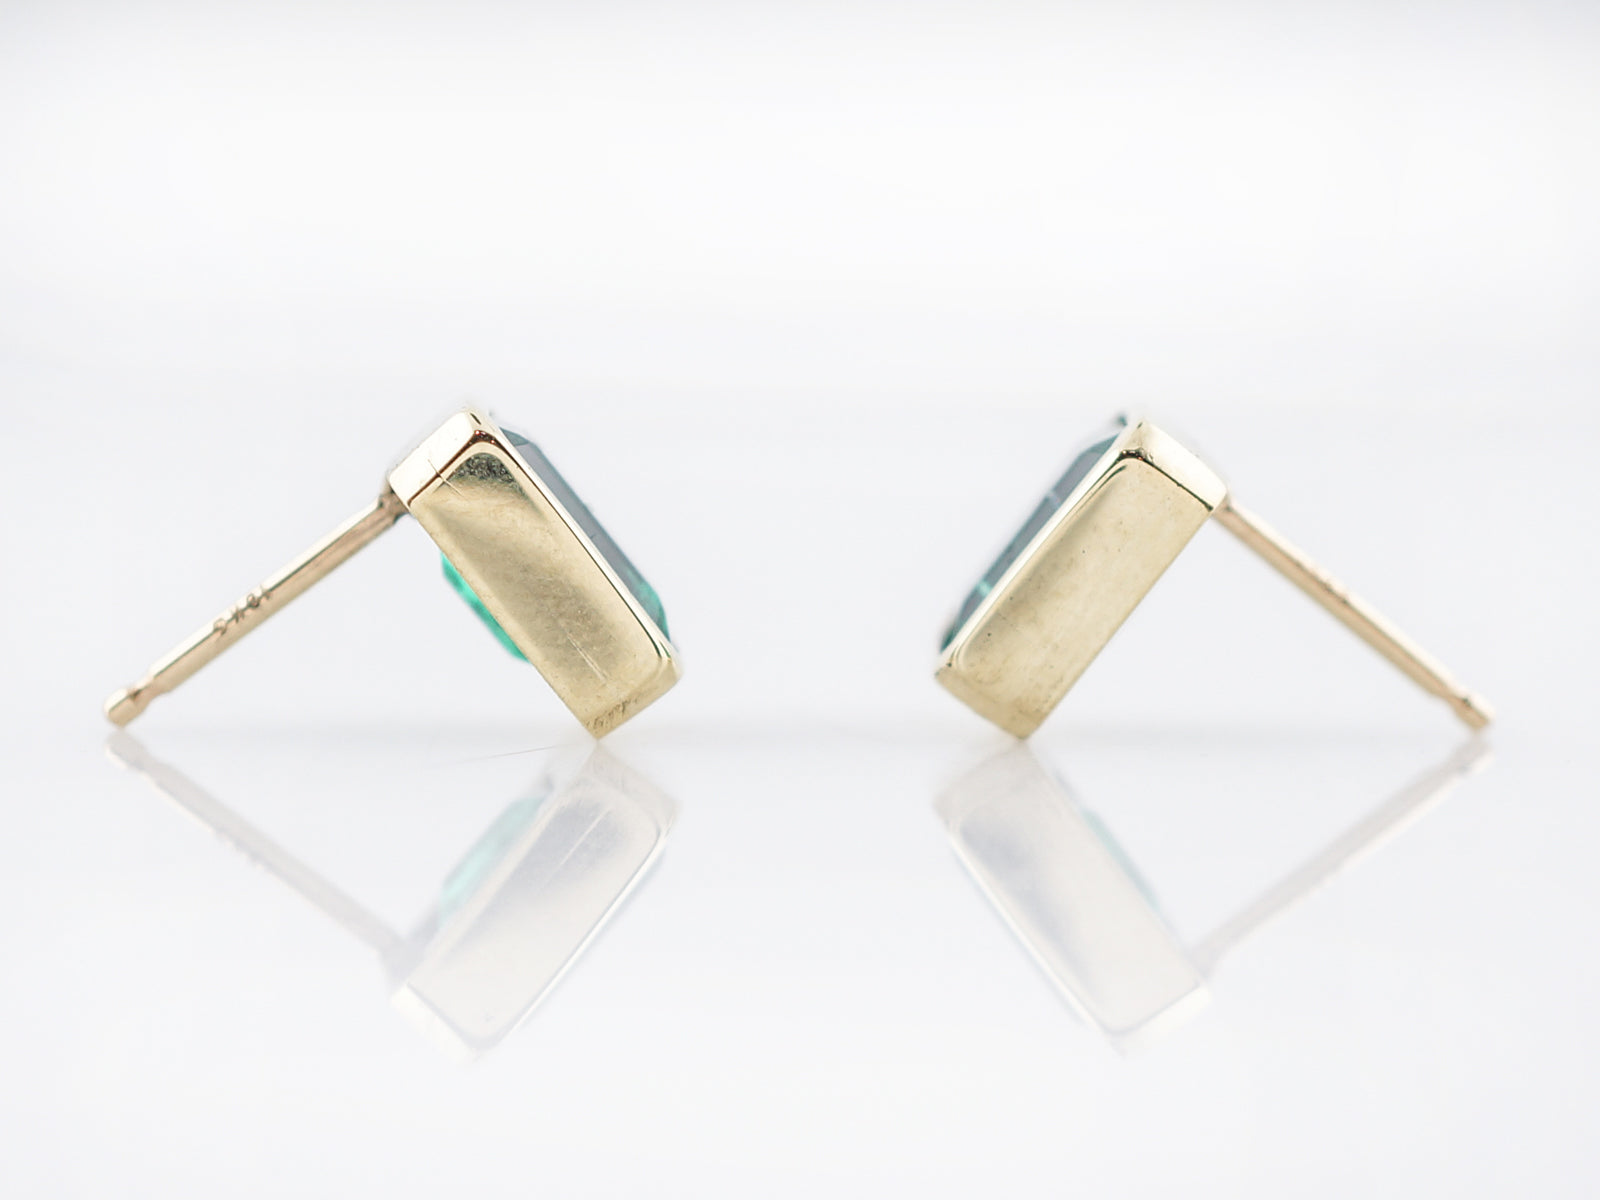 Modern Earrings 1.78 Emerald Cut Emeralds in 18k Yellow Gold